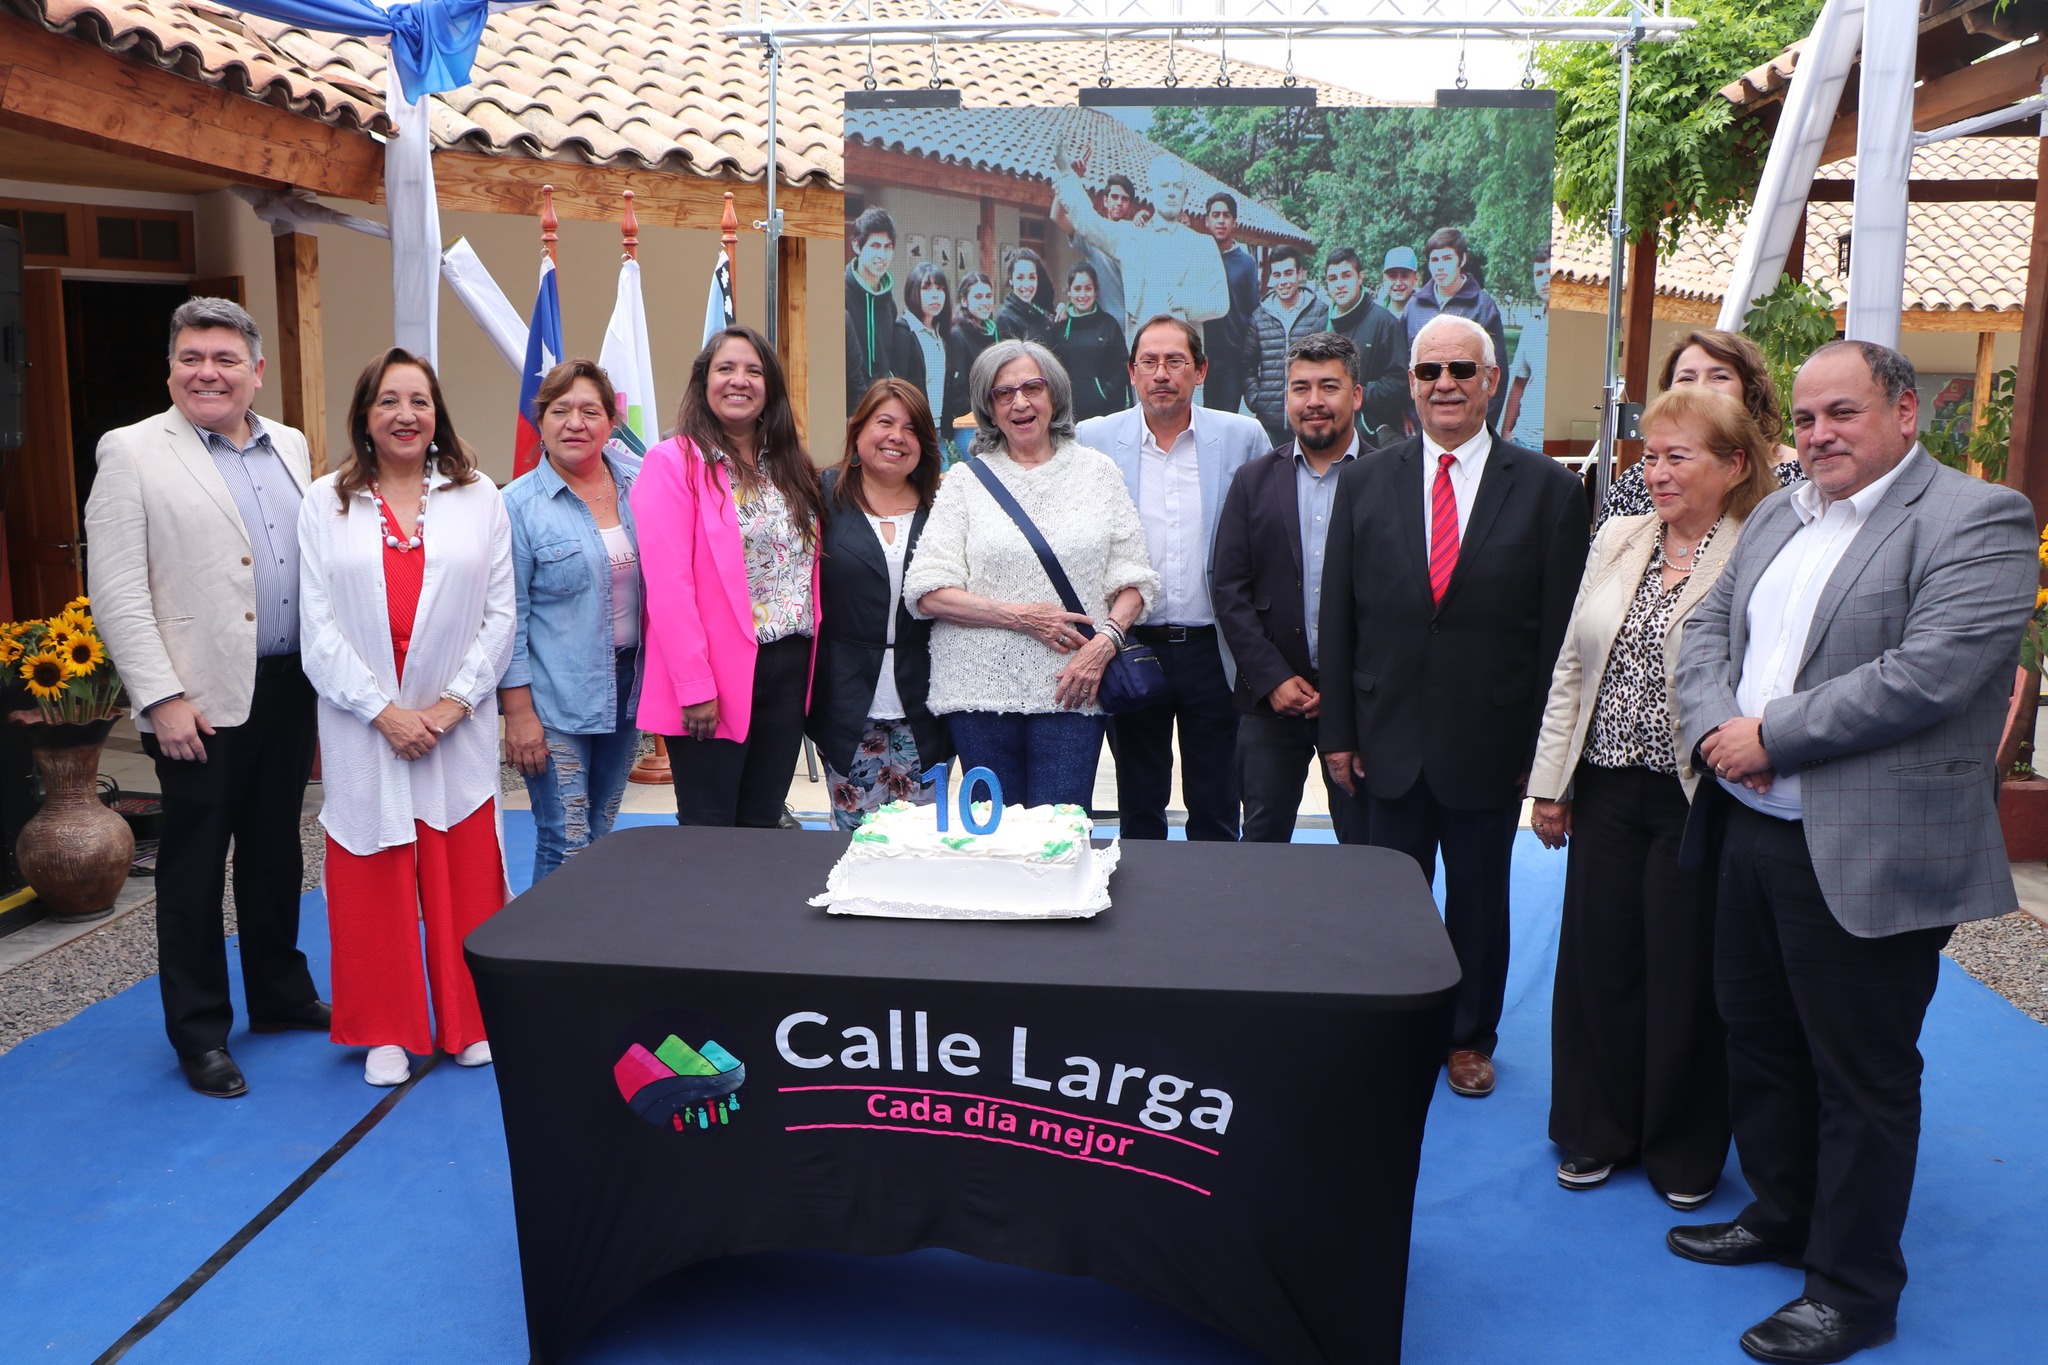 CALLE LARGA: 10 años cumplió el Centro Cultural y Museo Pedro Aguirre Cerda